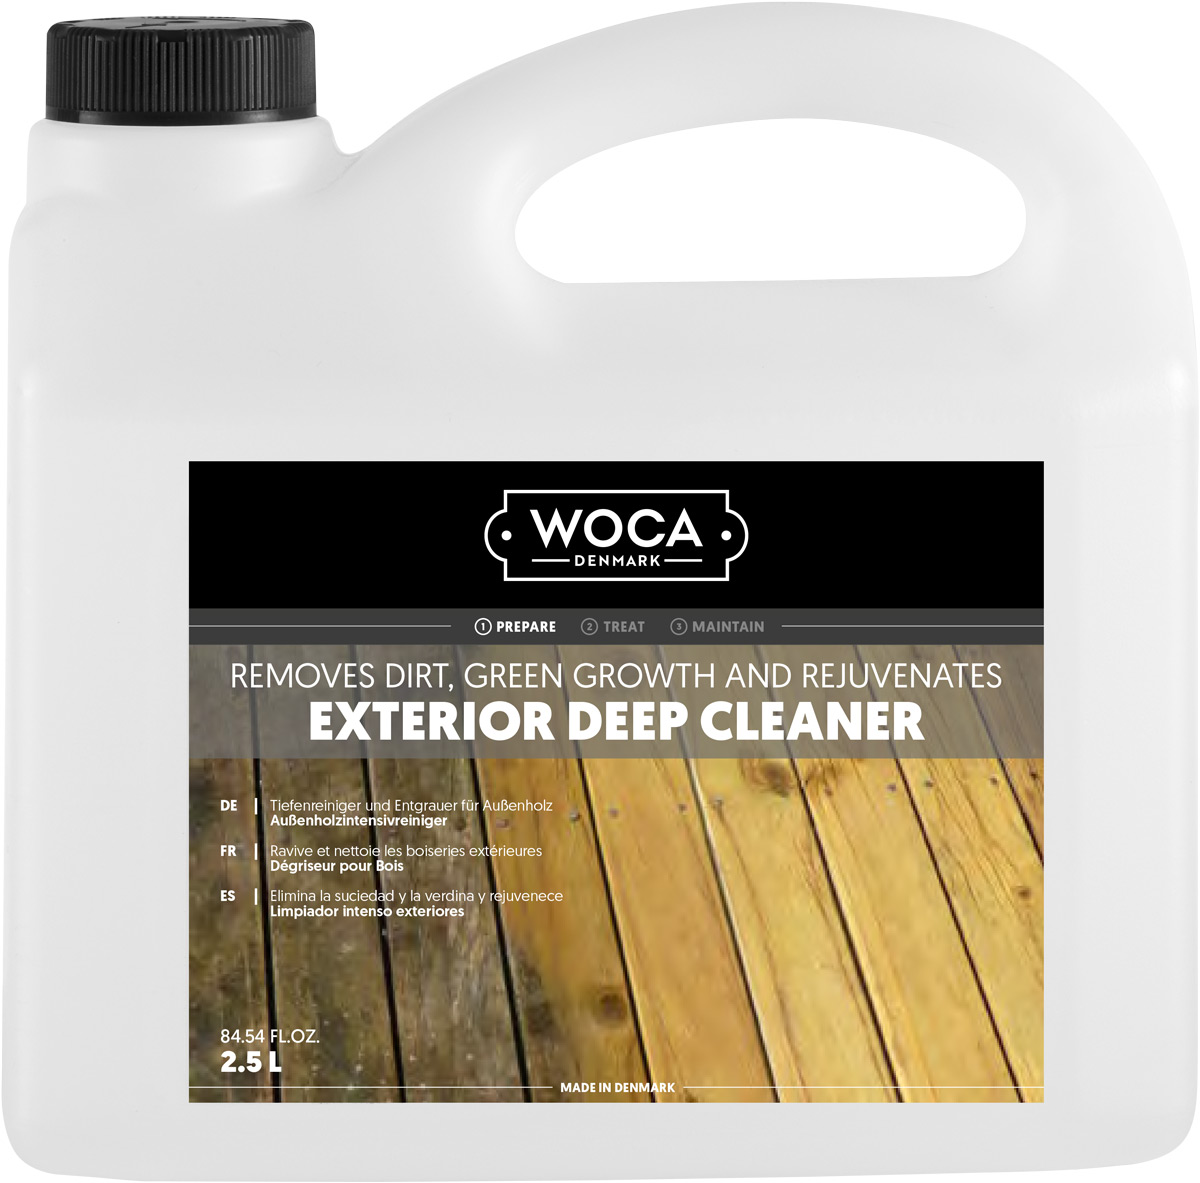 WOCA Außenholz Intensivreiniger / Exterior Deep Cleaner 2,5 Liter